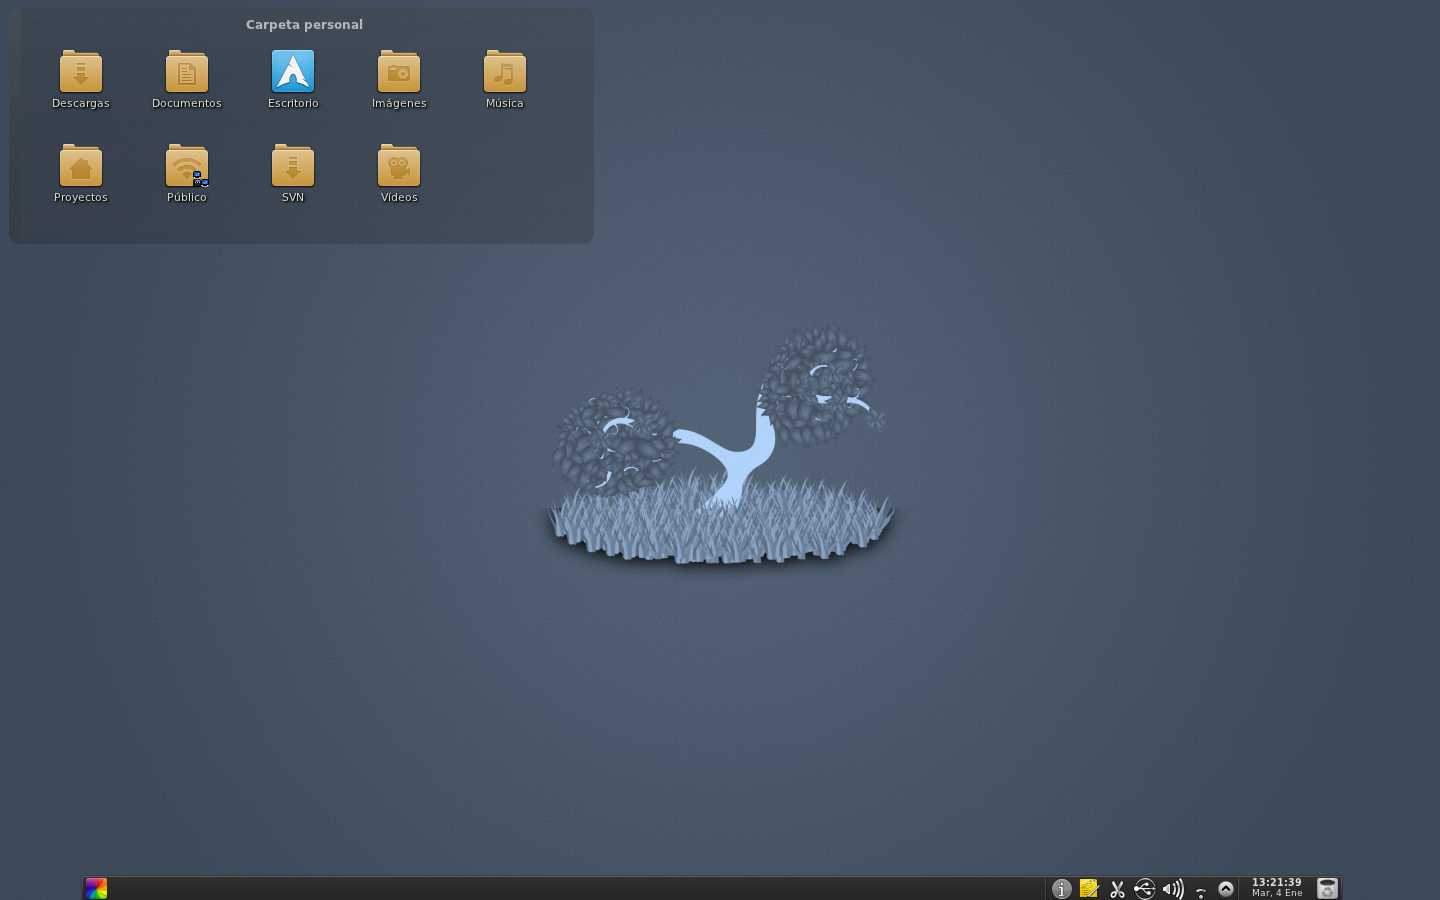 System Archlinux Desktop KDE SC 454 Wallpaper Biominimal Blue